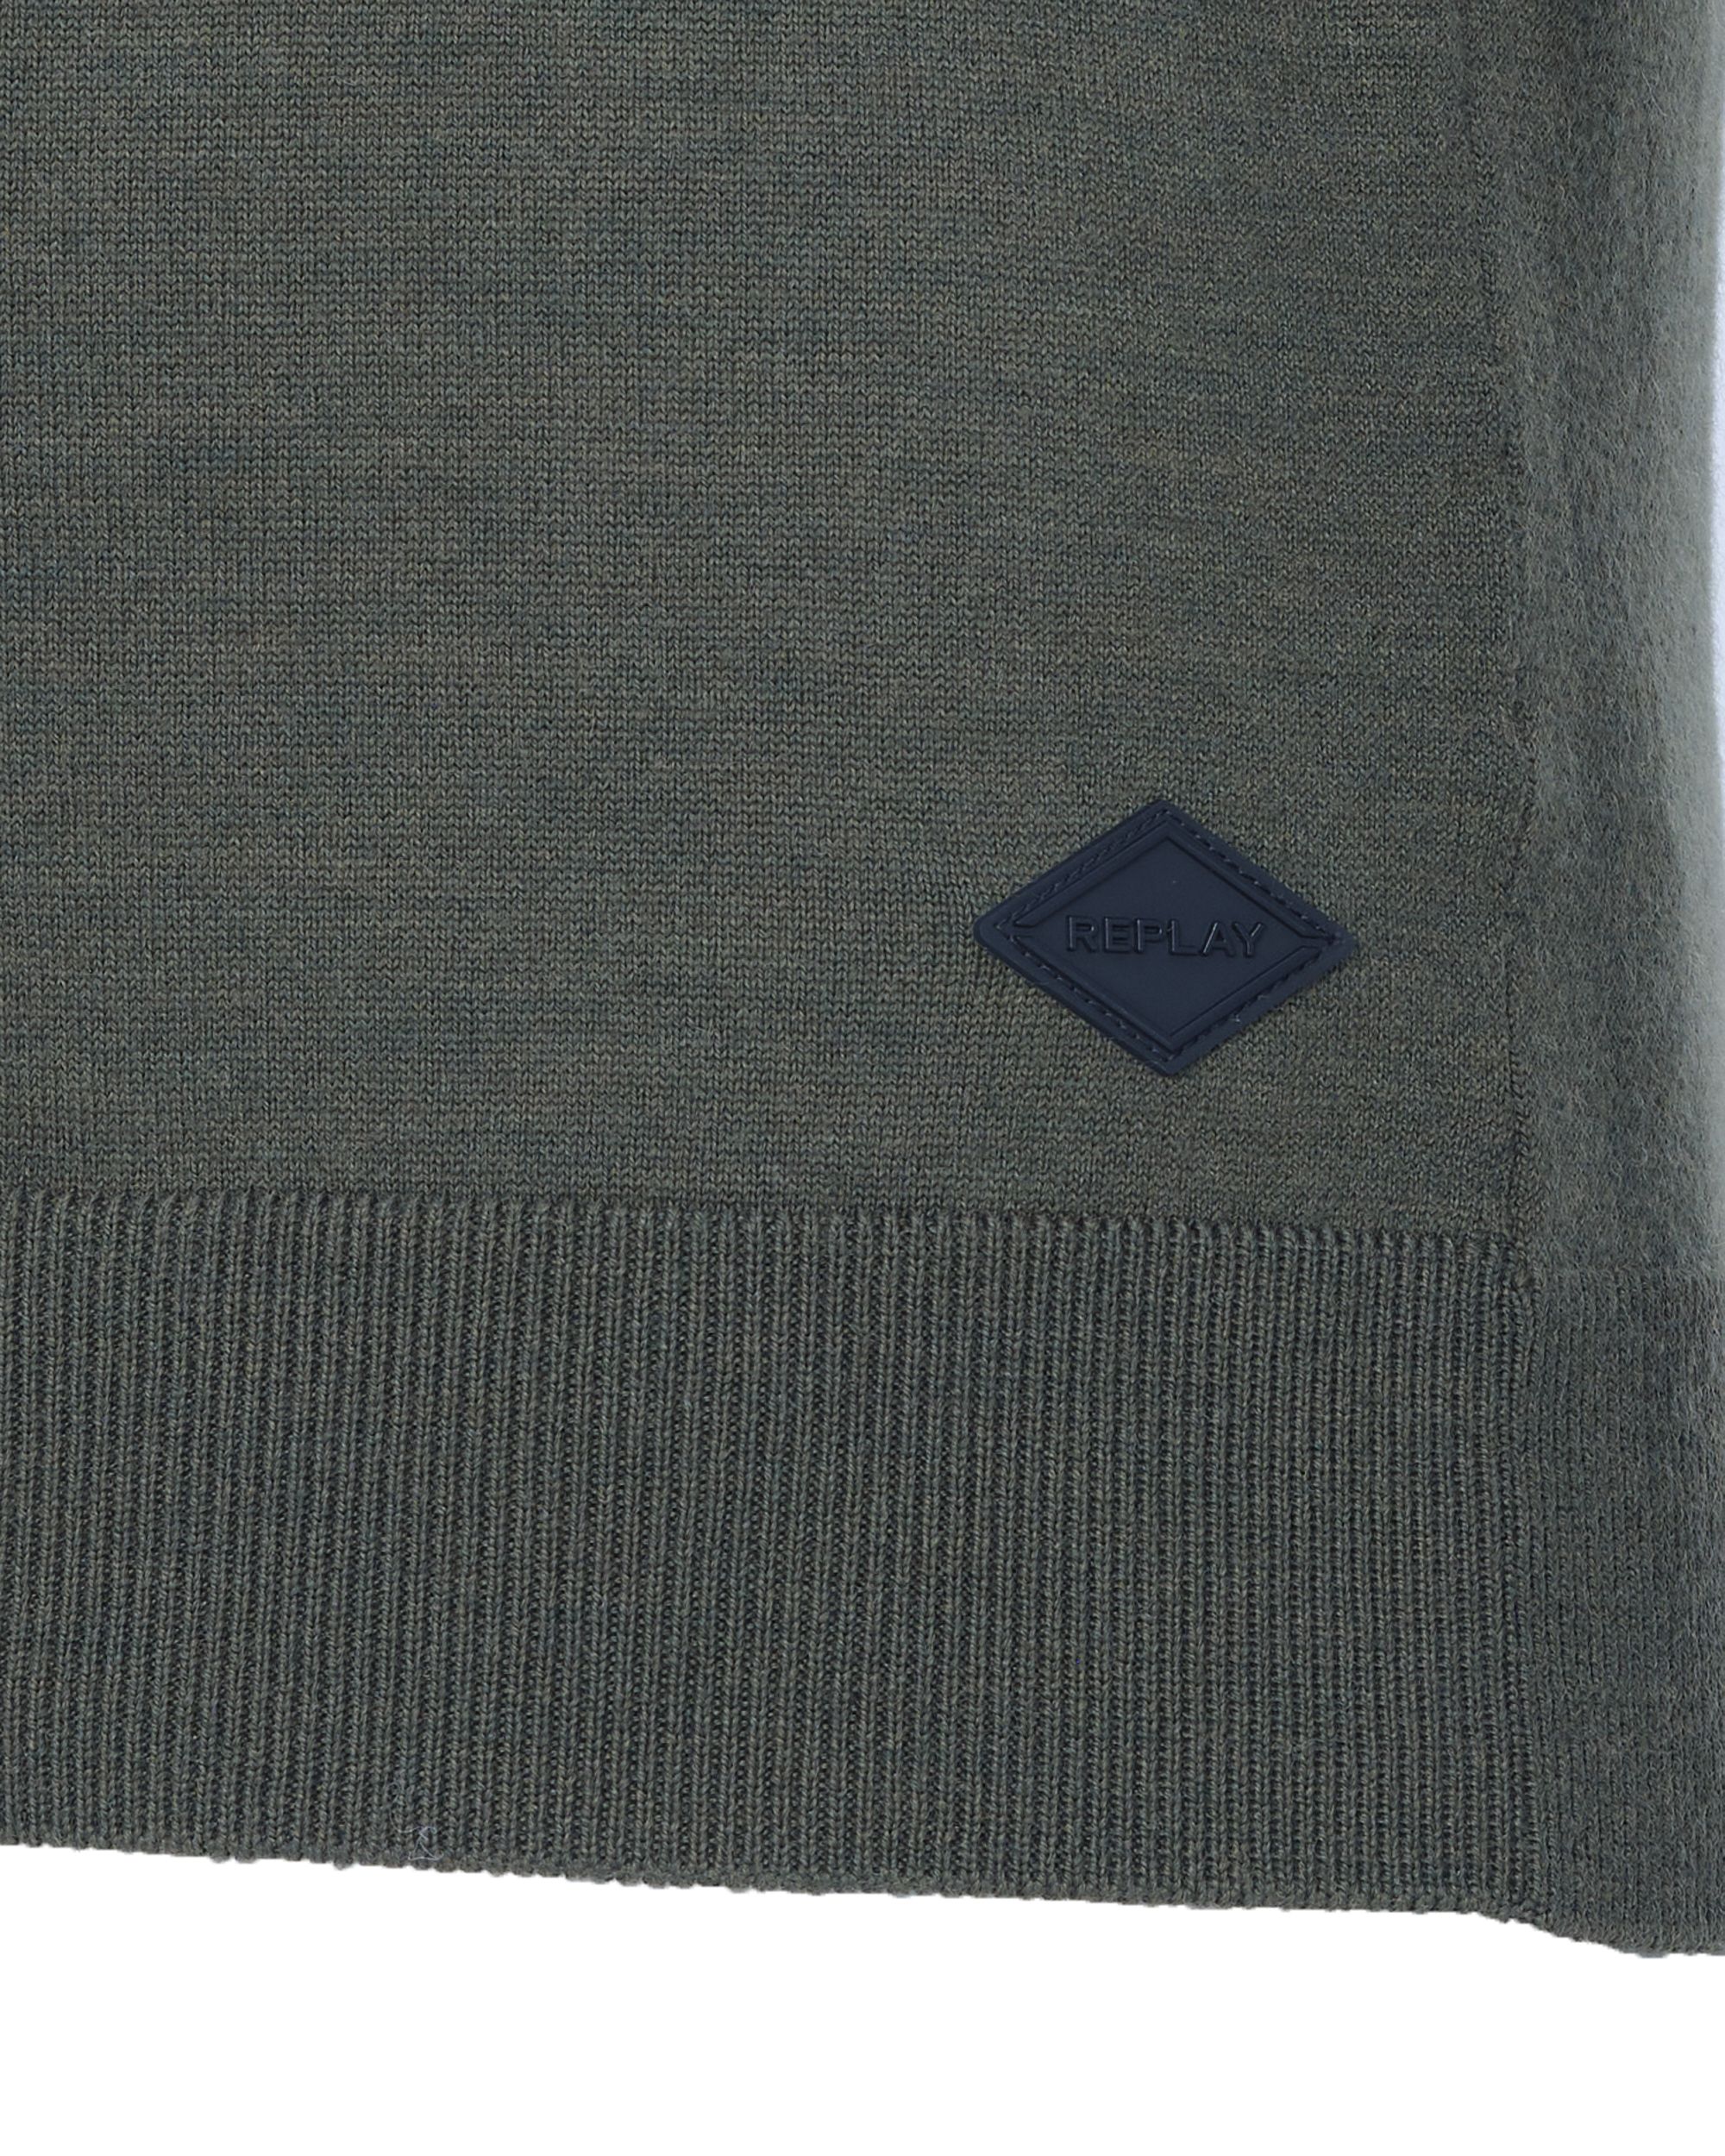 Replay Knitwear Groen 081801-001-L